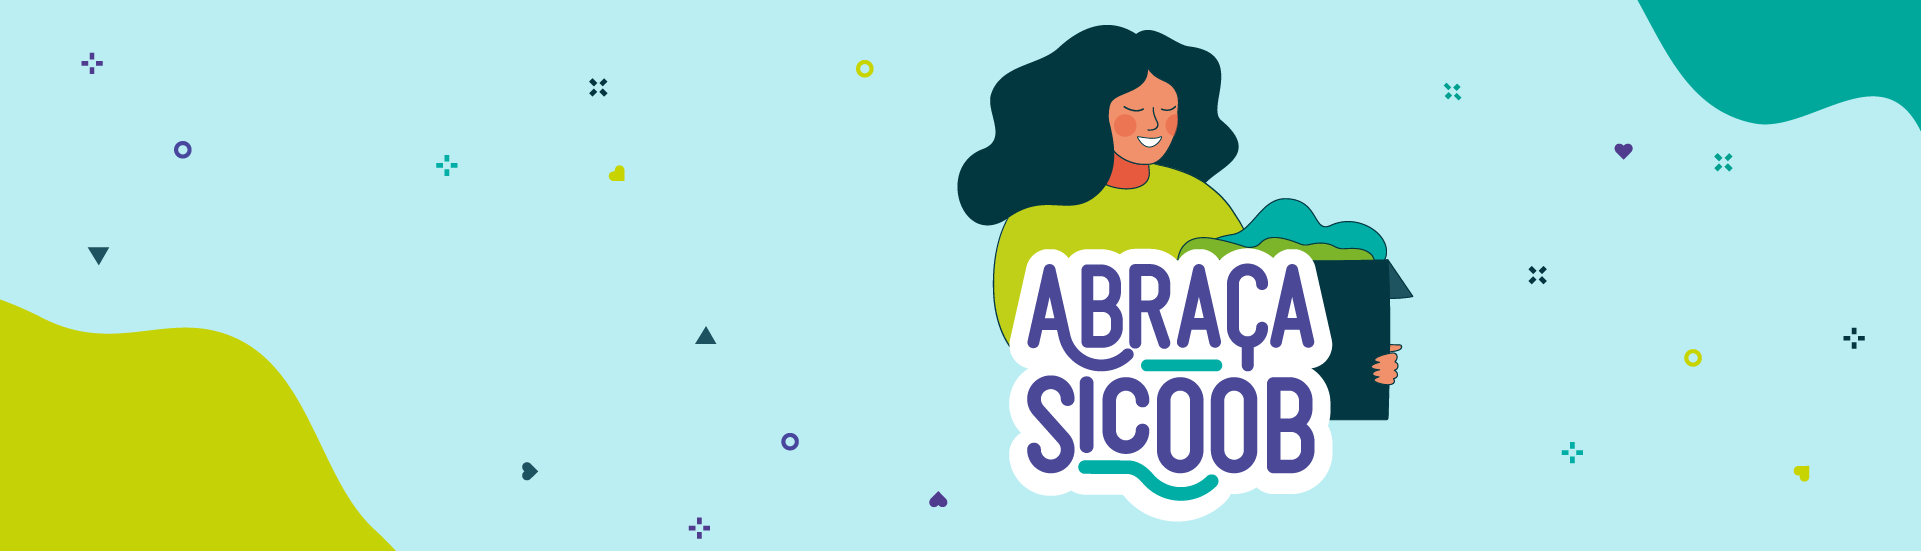 Abraça Sicoob - Cooperativas se unem para celebrar o Dia C.